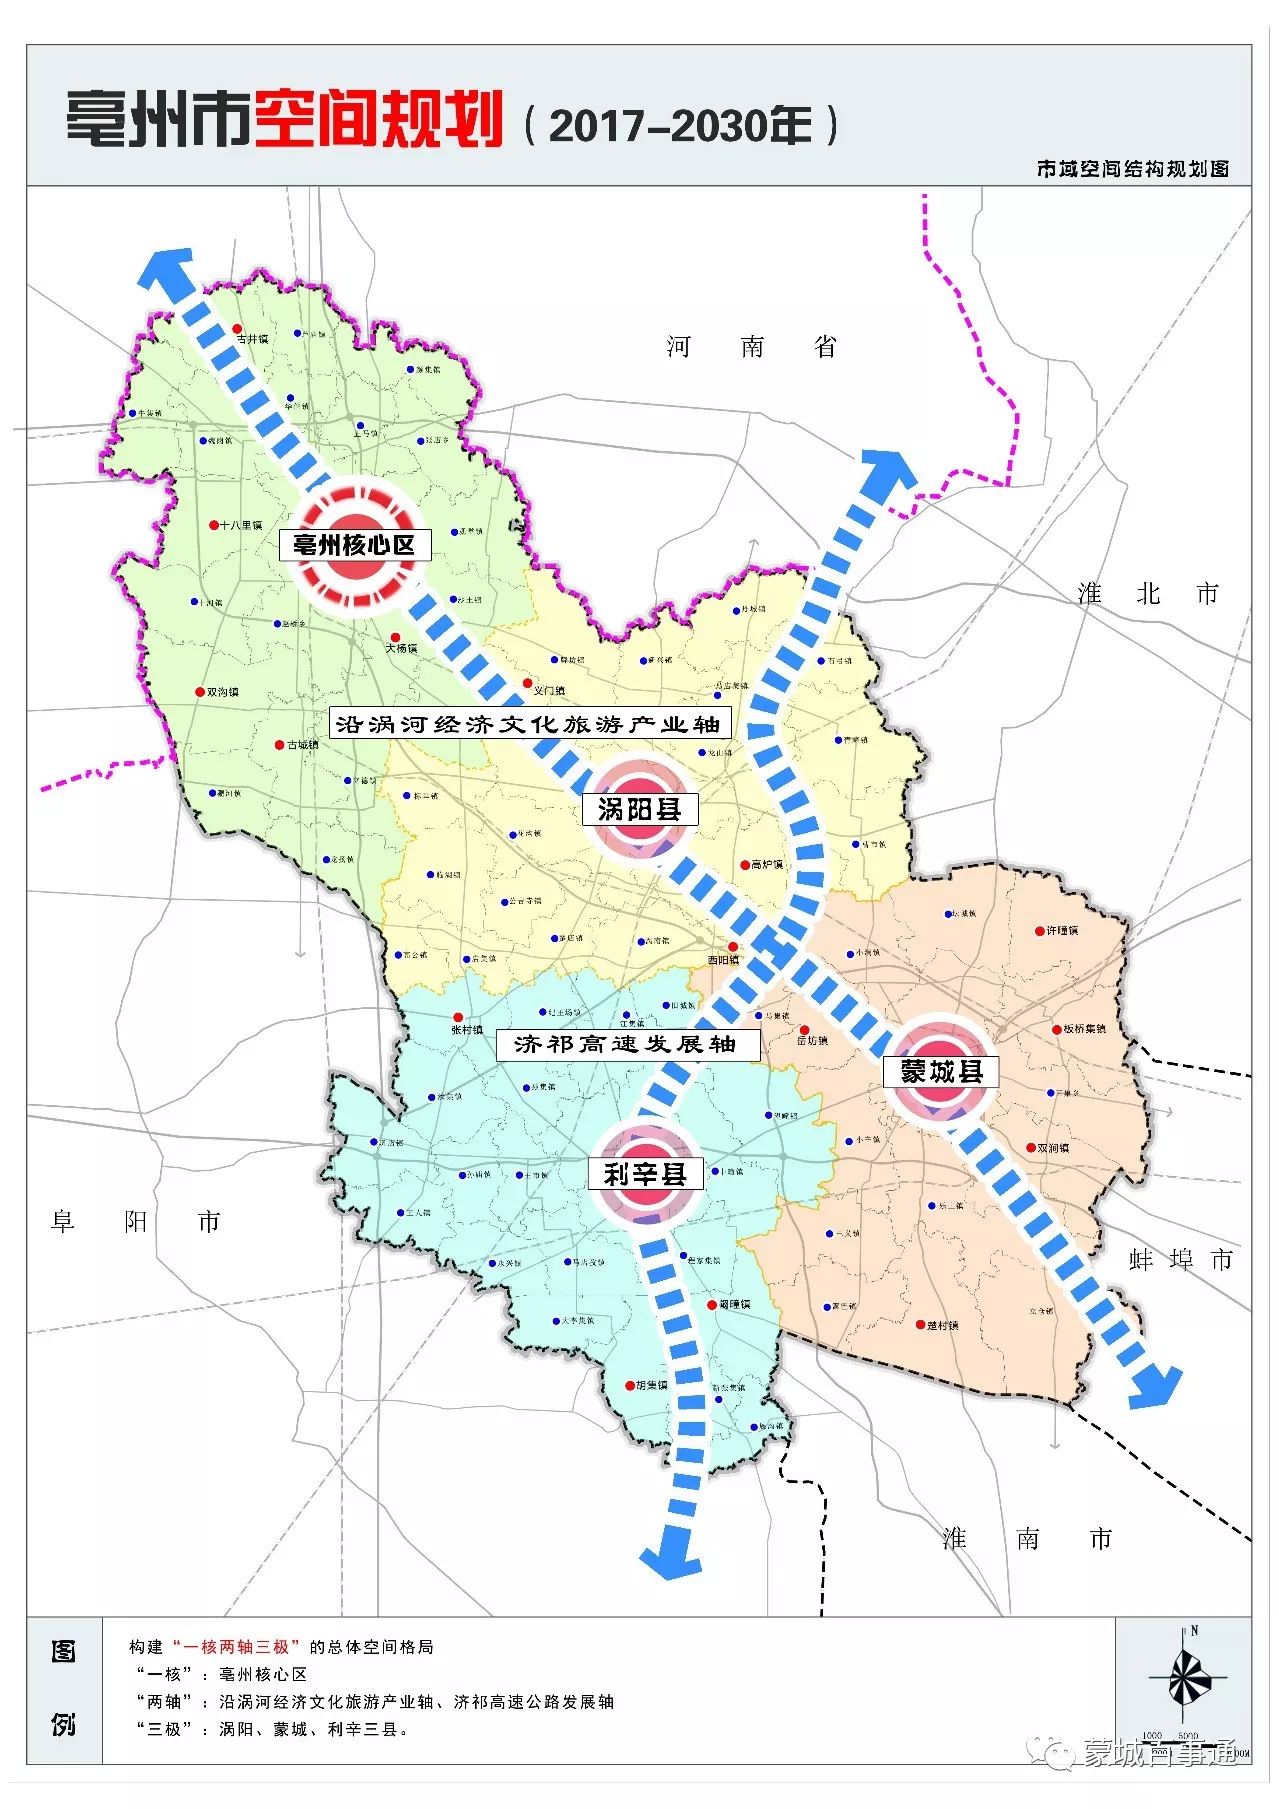 近日亳州市空间规划(2017-2030年)公示内容中所示 蒙城,涡阳,利辛三县